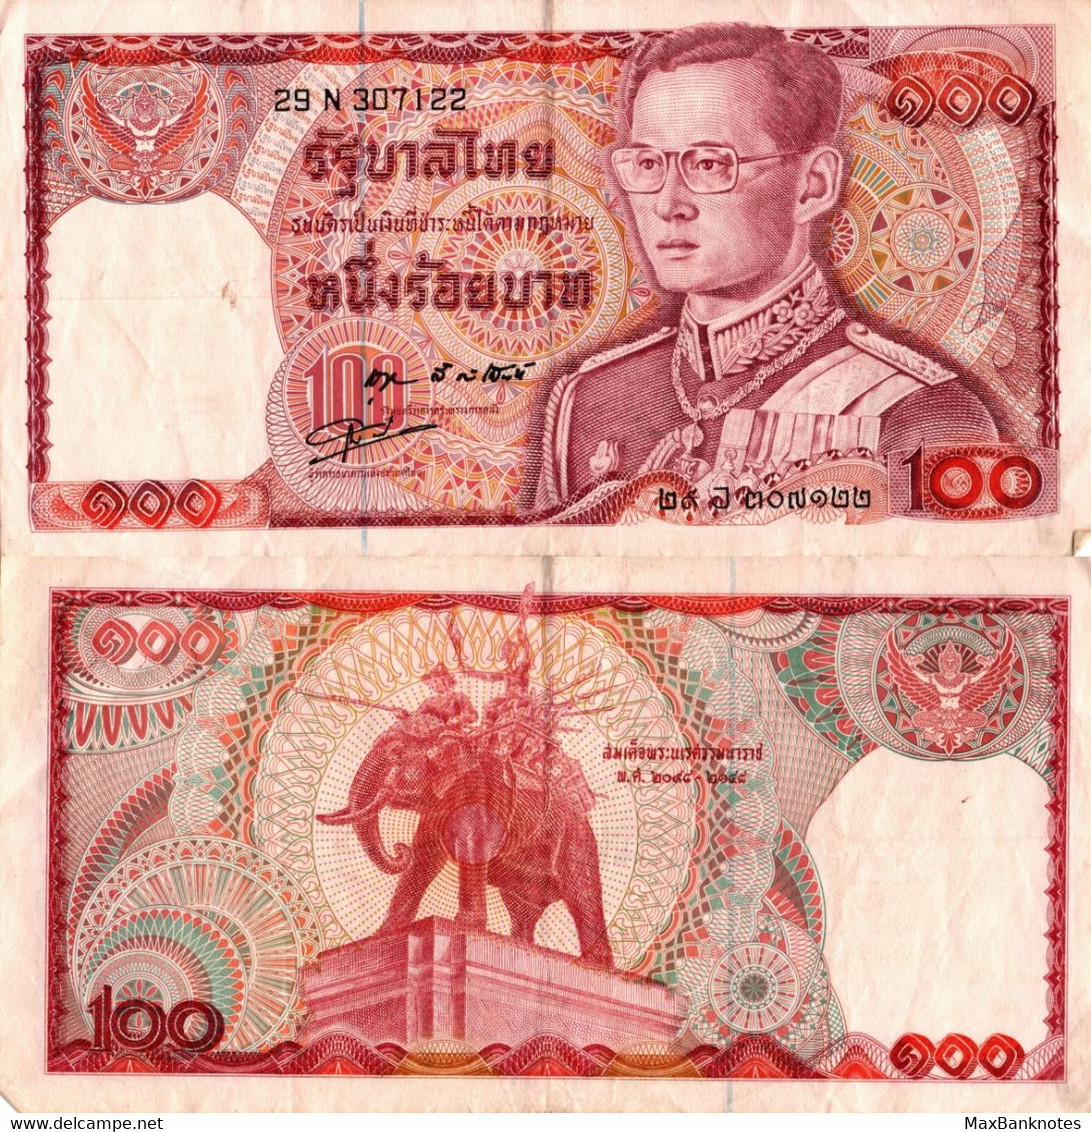 Thailand / 100 Baht / 1978 / P-89(a) / VF - Thailand